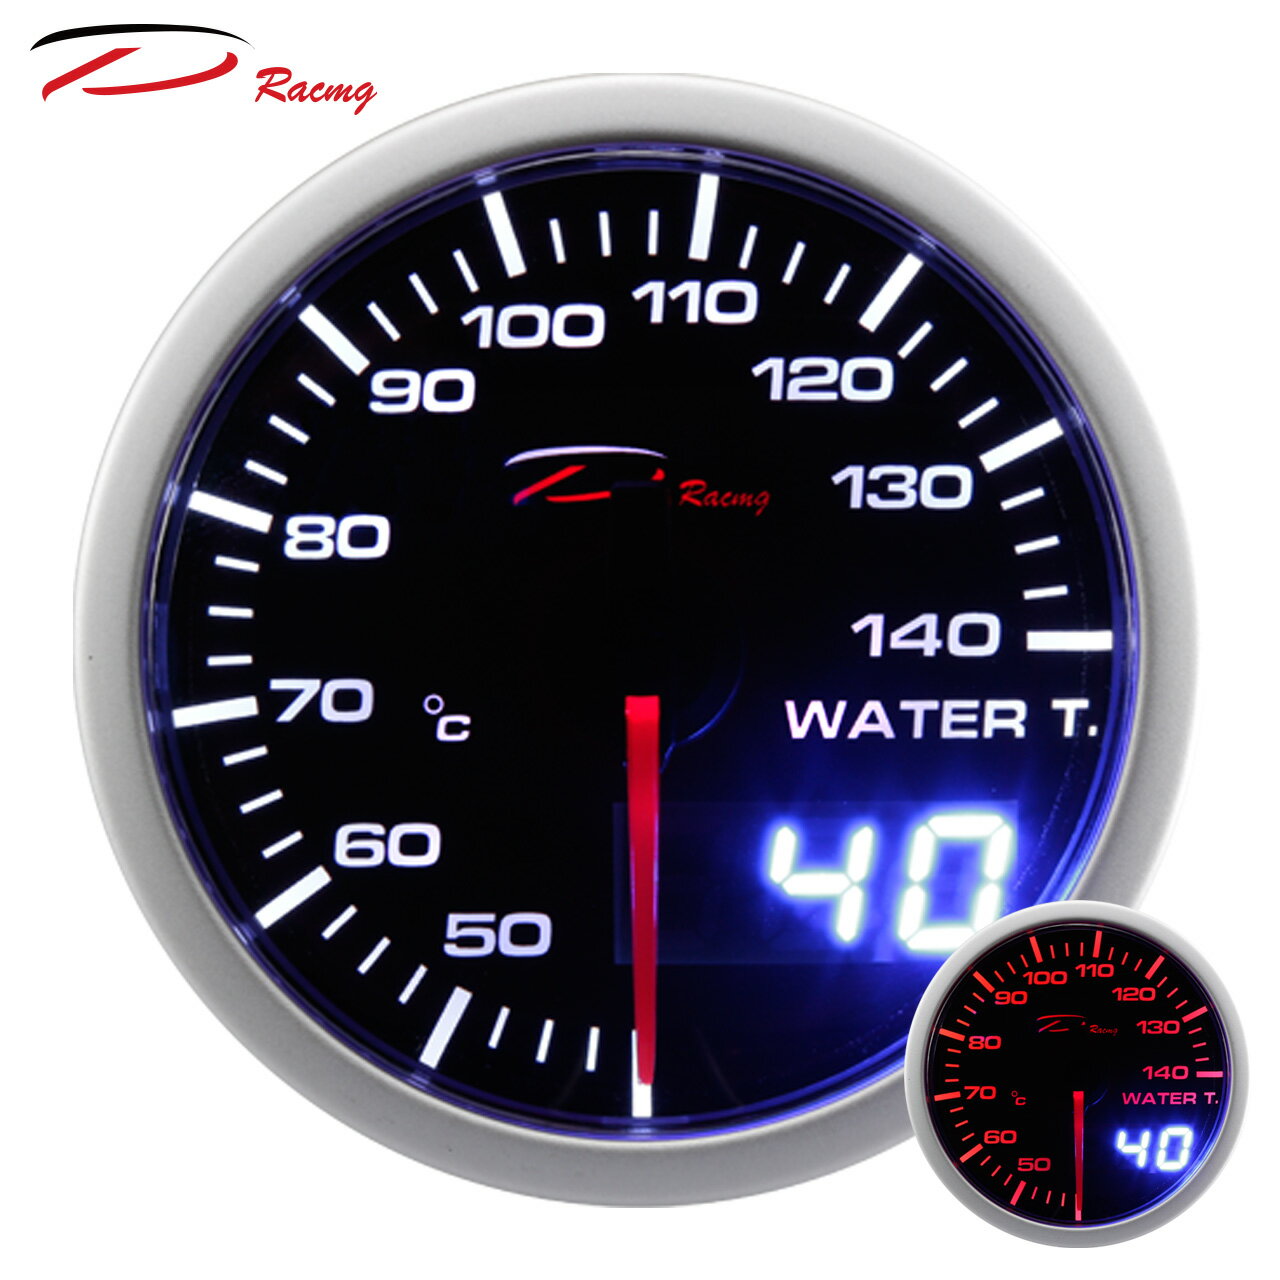 【D Racing三環錶/改裝錶】60mm水溫錶 WATER TEMP。Dual View 指針+數字雙顯示系列。錶頭無設定功能。